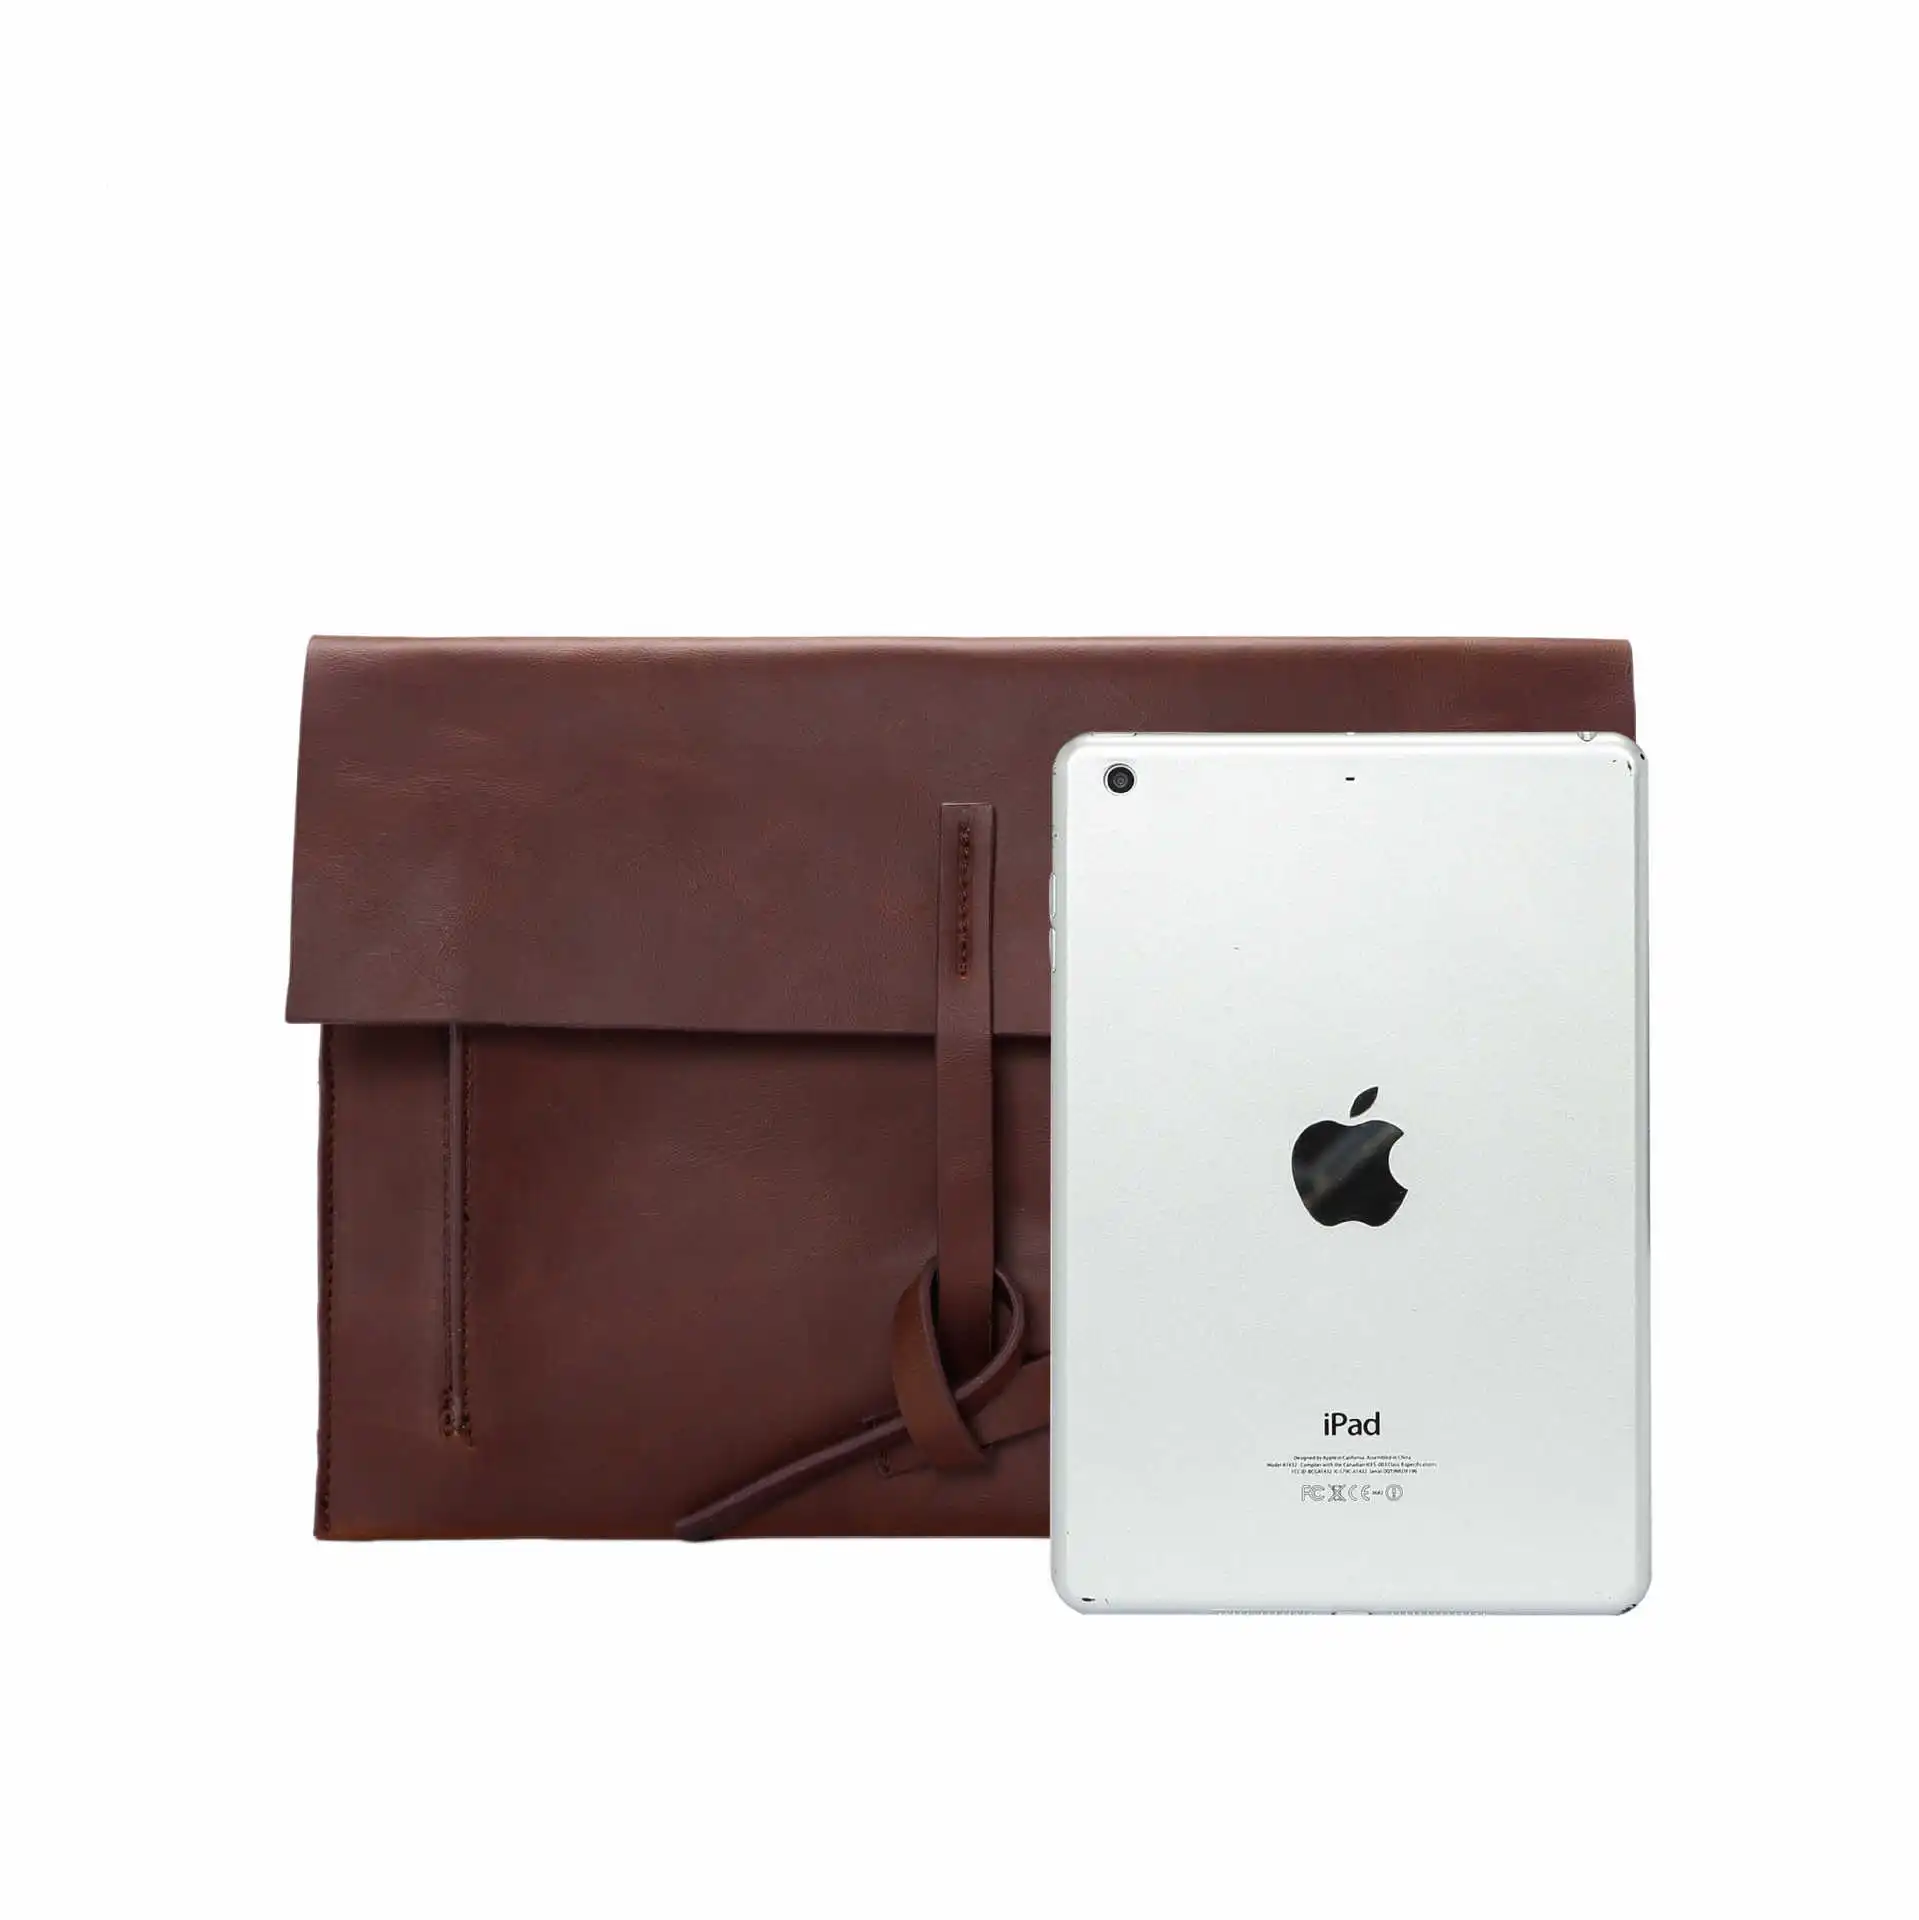 Новая мода ретро тесьма-запутанная горизонтальная стильная сумка кожаный конверт сумка для мобильного телефона